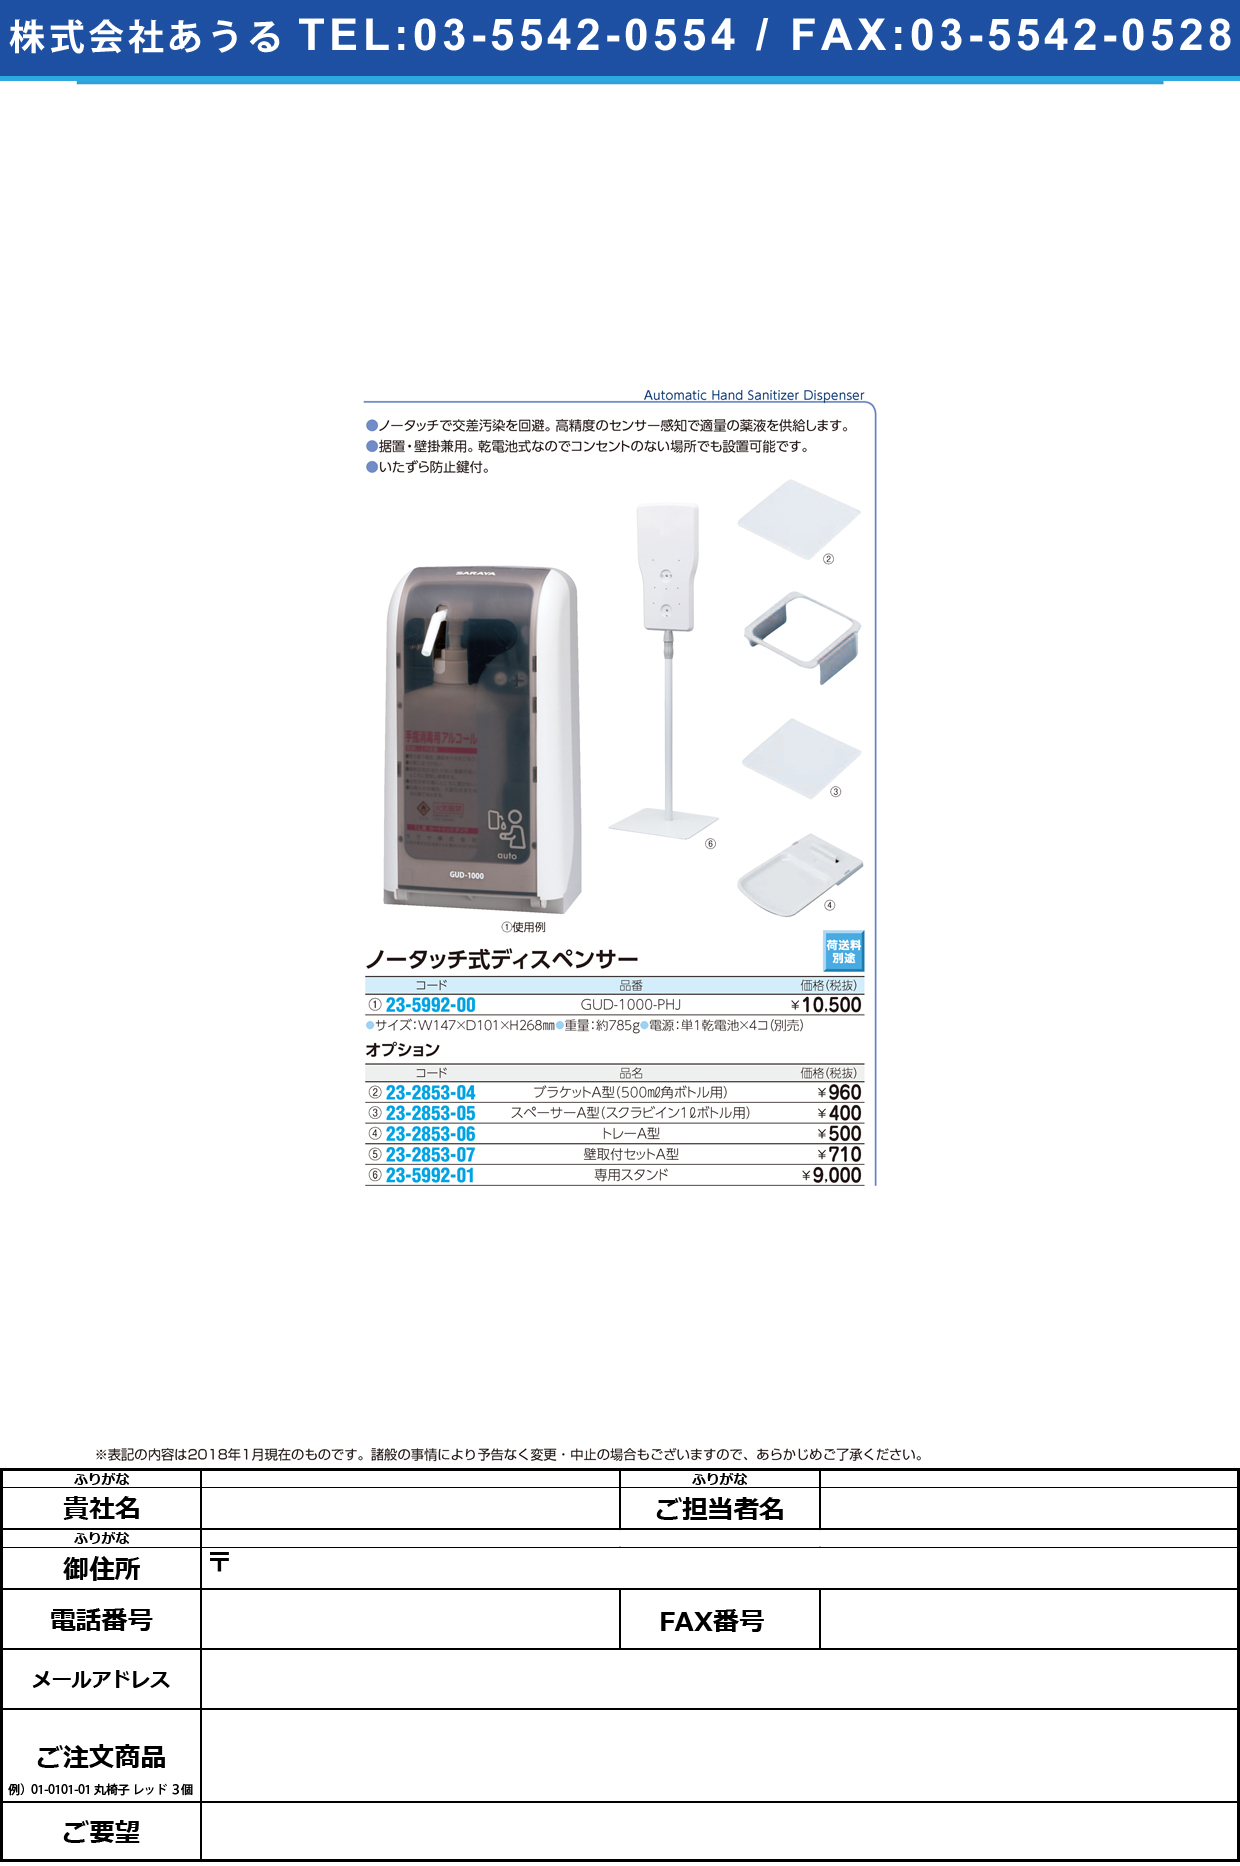 (23-5992-00)ノータッチ式ディスペンサー GUD-1000-PHJ ﾉｰﾀｯﾁｼｷﾃﾞｨｽﾍﾟﾝｻｰ(東京サラヤ)【1台単位】【2018年カタログ商品】